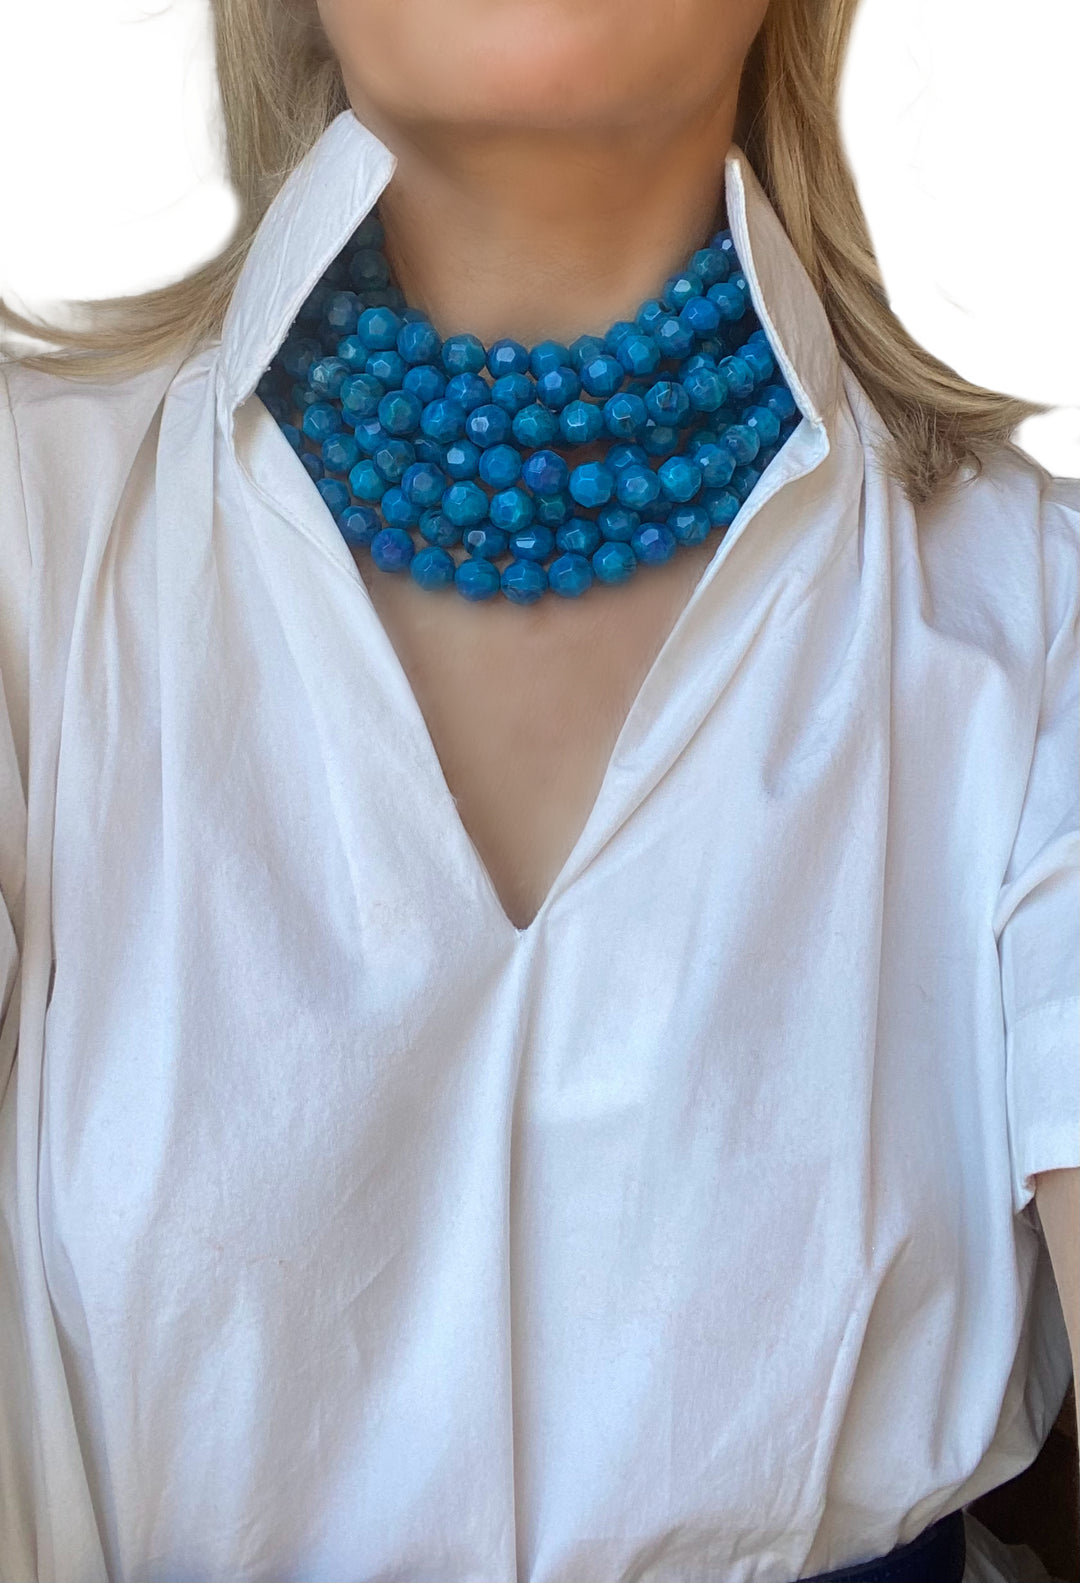 Bella Marble Ocean Blue Necklace